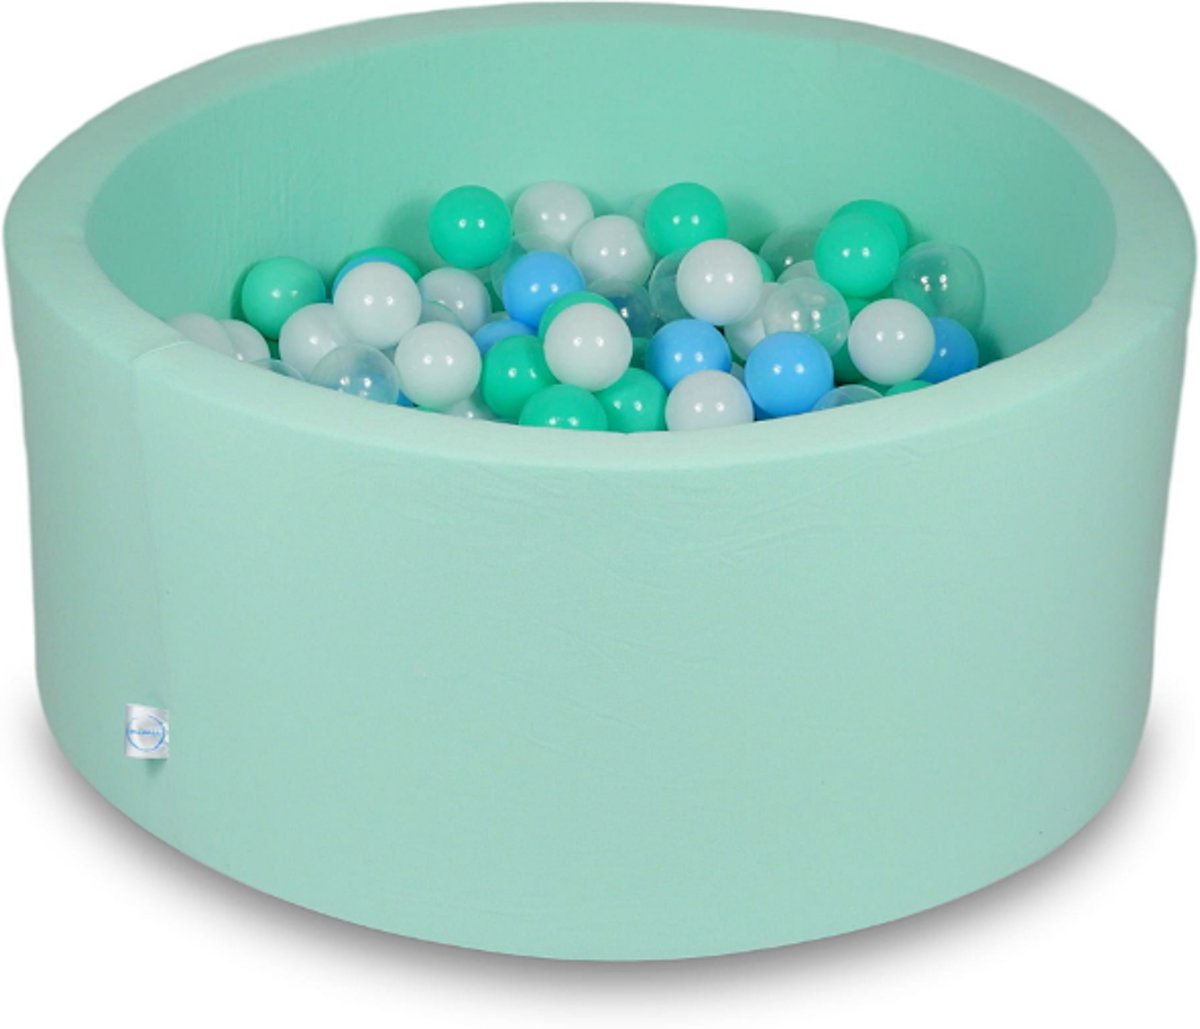 Ballenbak - 300 ballen - 90 x 40 cm - ballenbad - rond mint groen